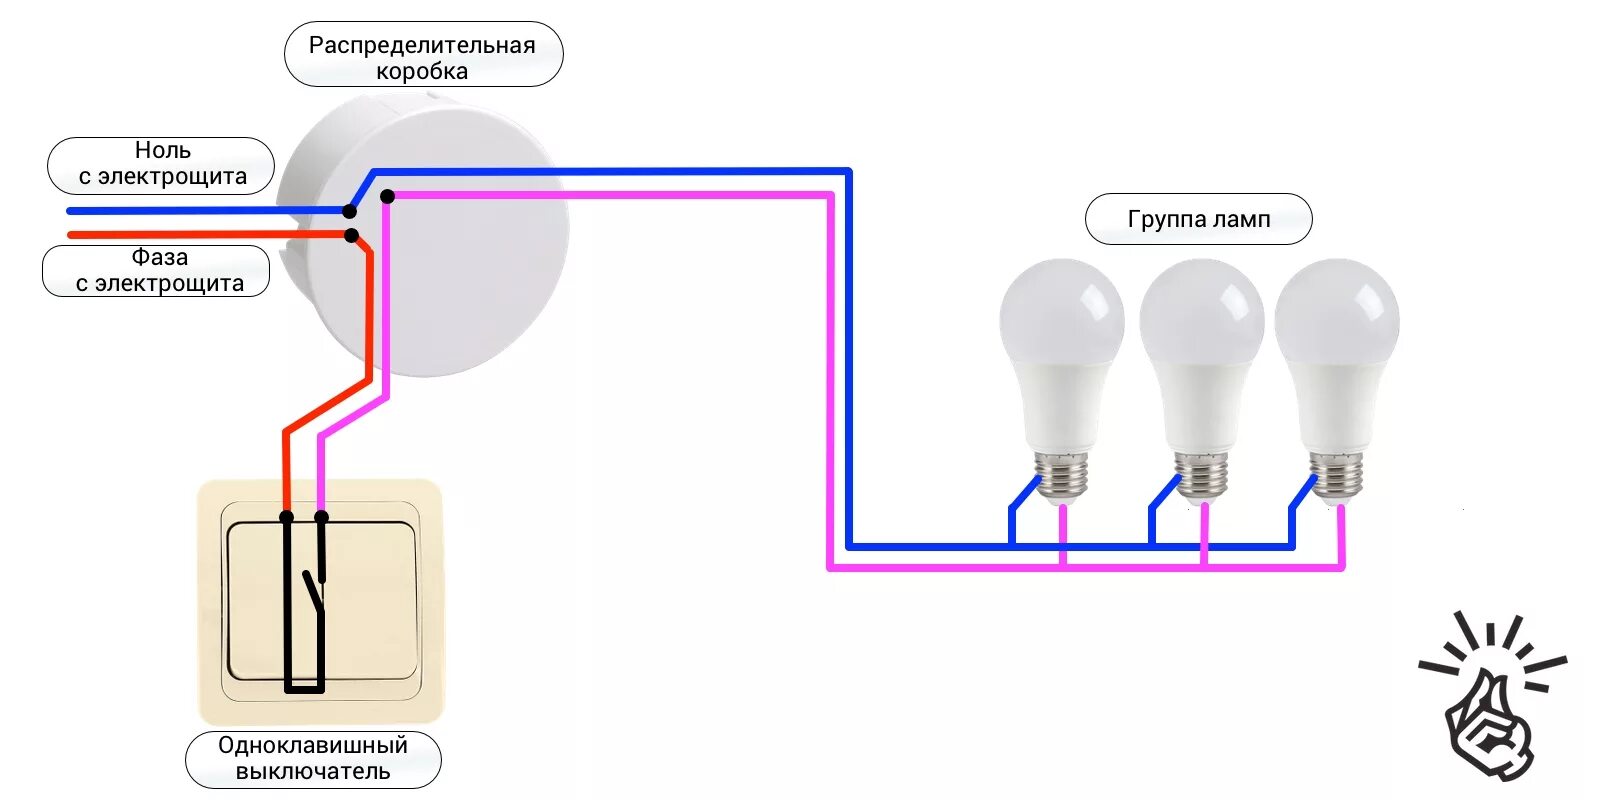 Свет с тремя выключателями. Схема подключения одноклавишного выключателя на две лампочки. Схема подключения одноклавишного выключателя на две лампы. Схема подключения одноклавишного выключателя к лампе. Схема подключения выключателя одноклавишного к 2 лампочкам.